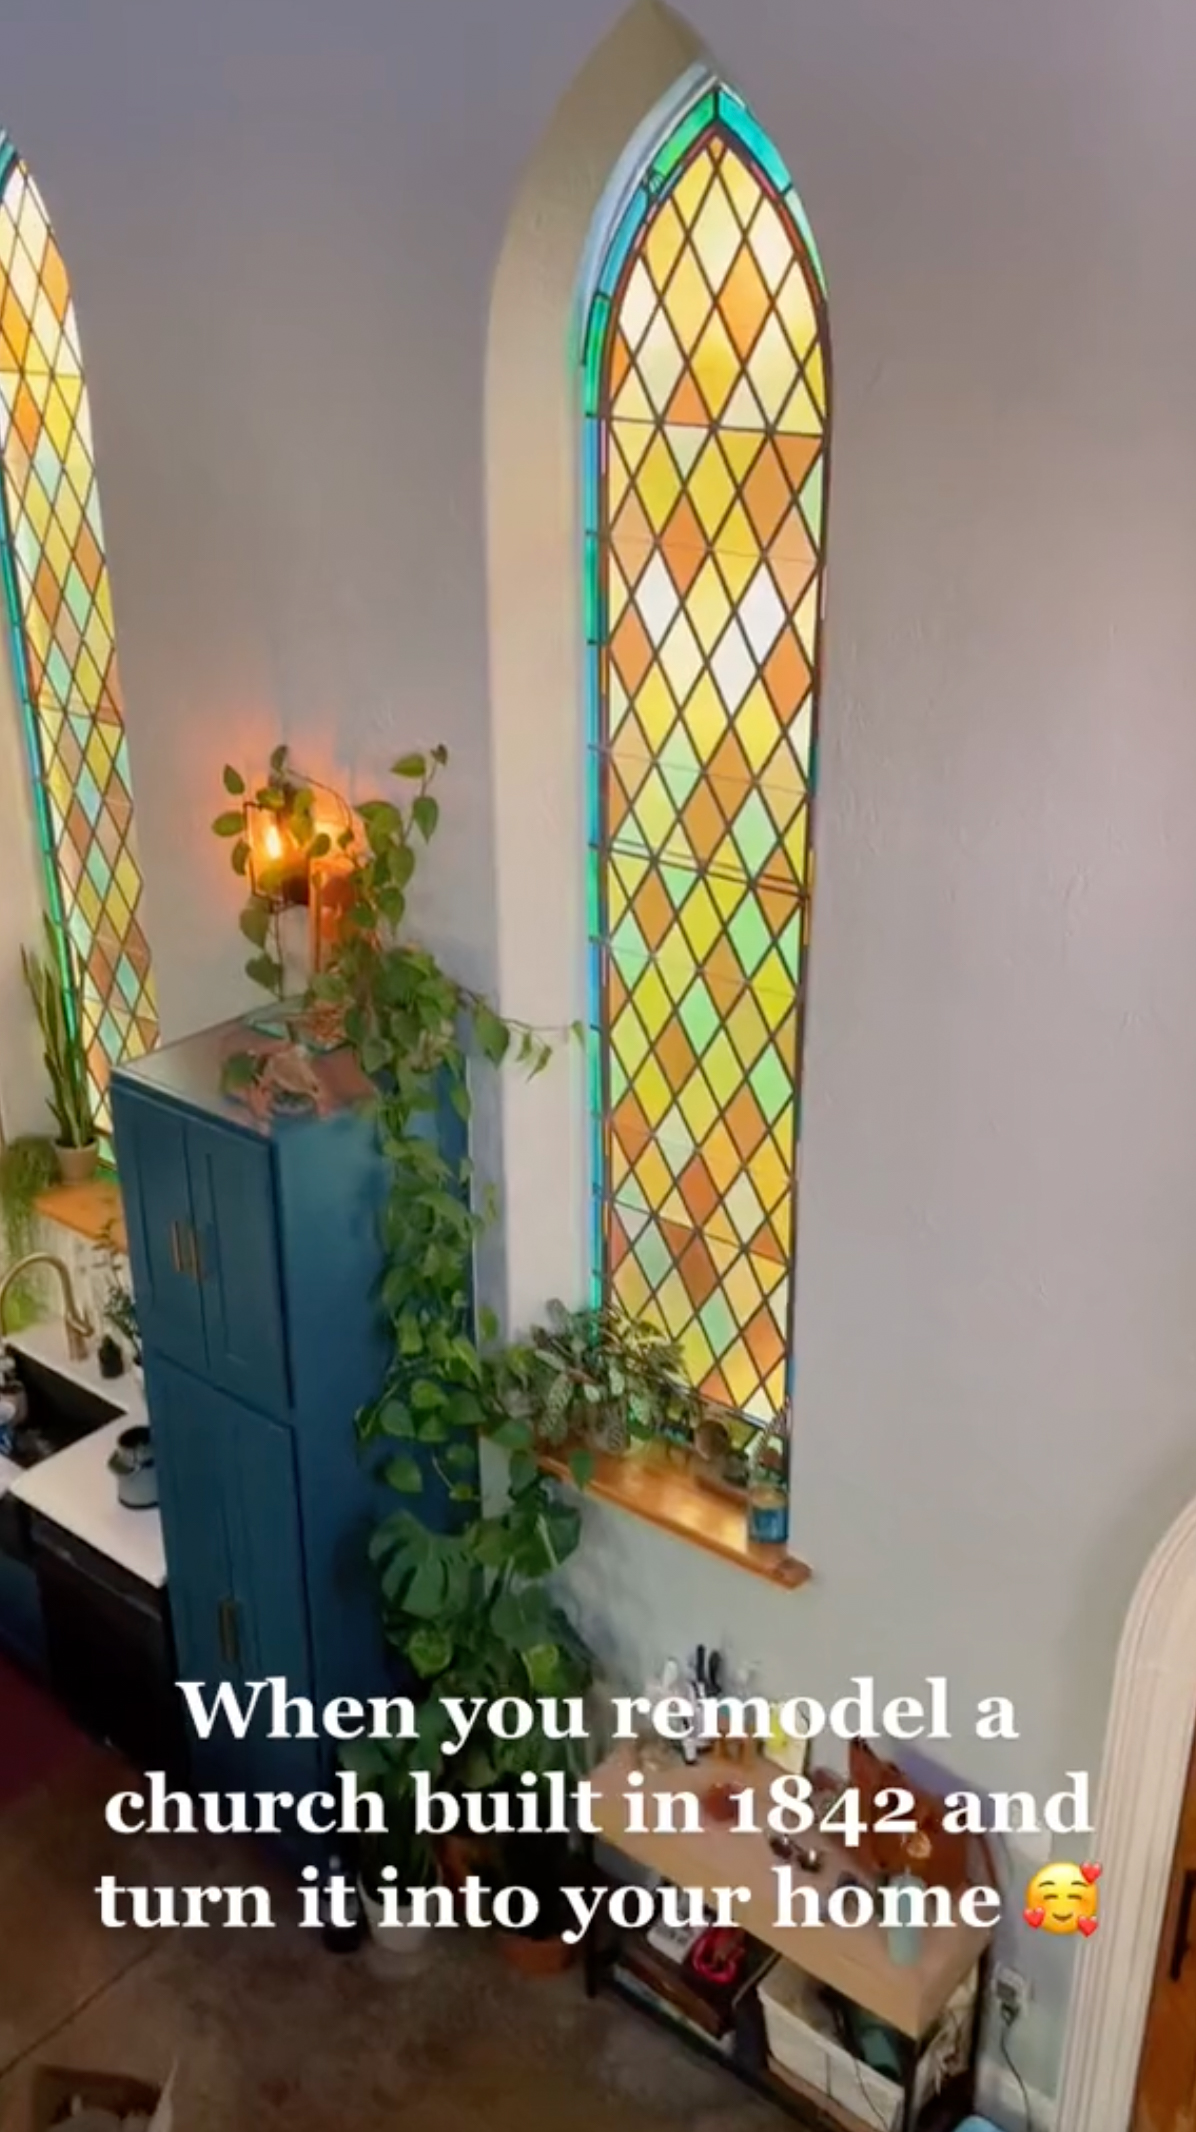 Das Haus bewahrte die ursprünglichen Buntglasfenster aus seiner früheren Zeit als heilige Einrichtung